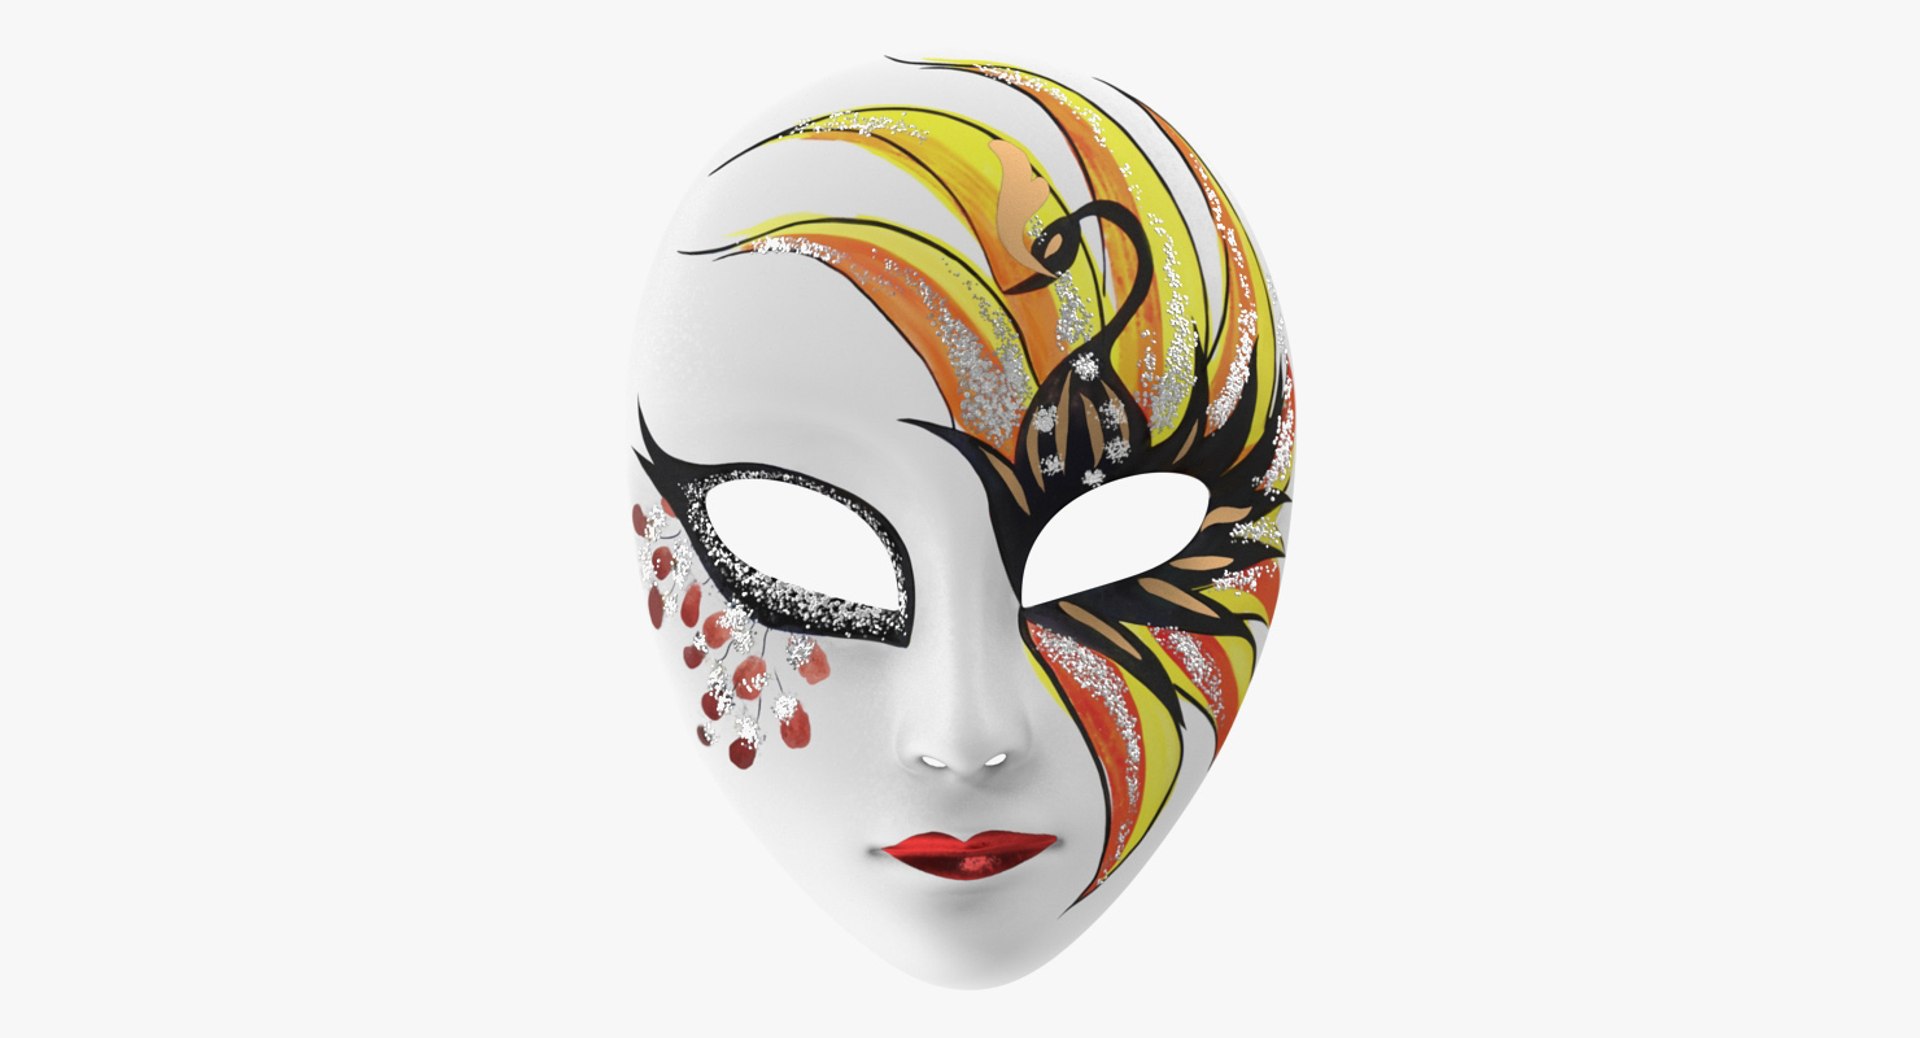 full face mask designs for girls